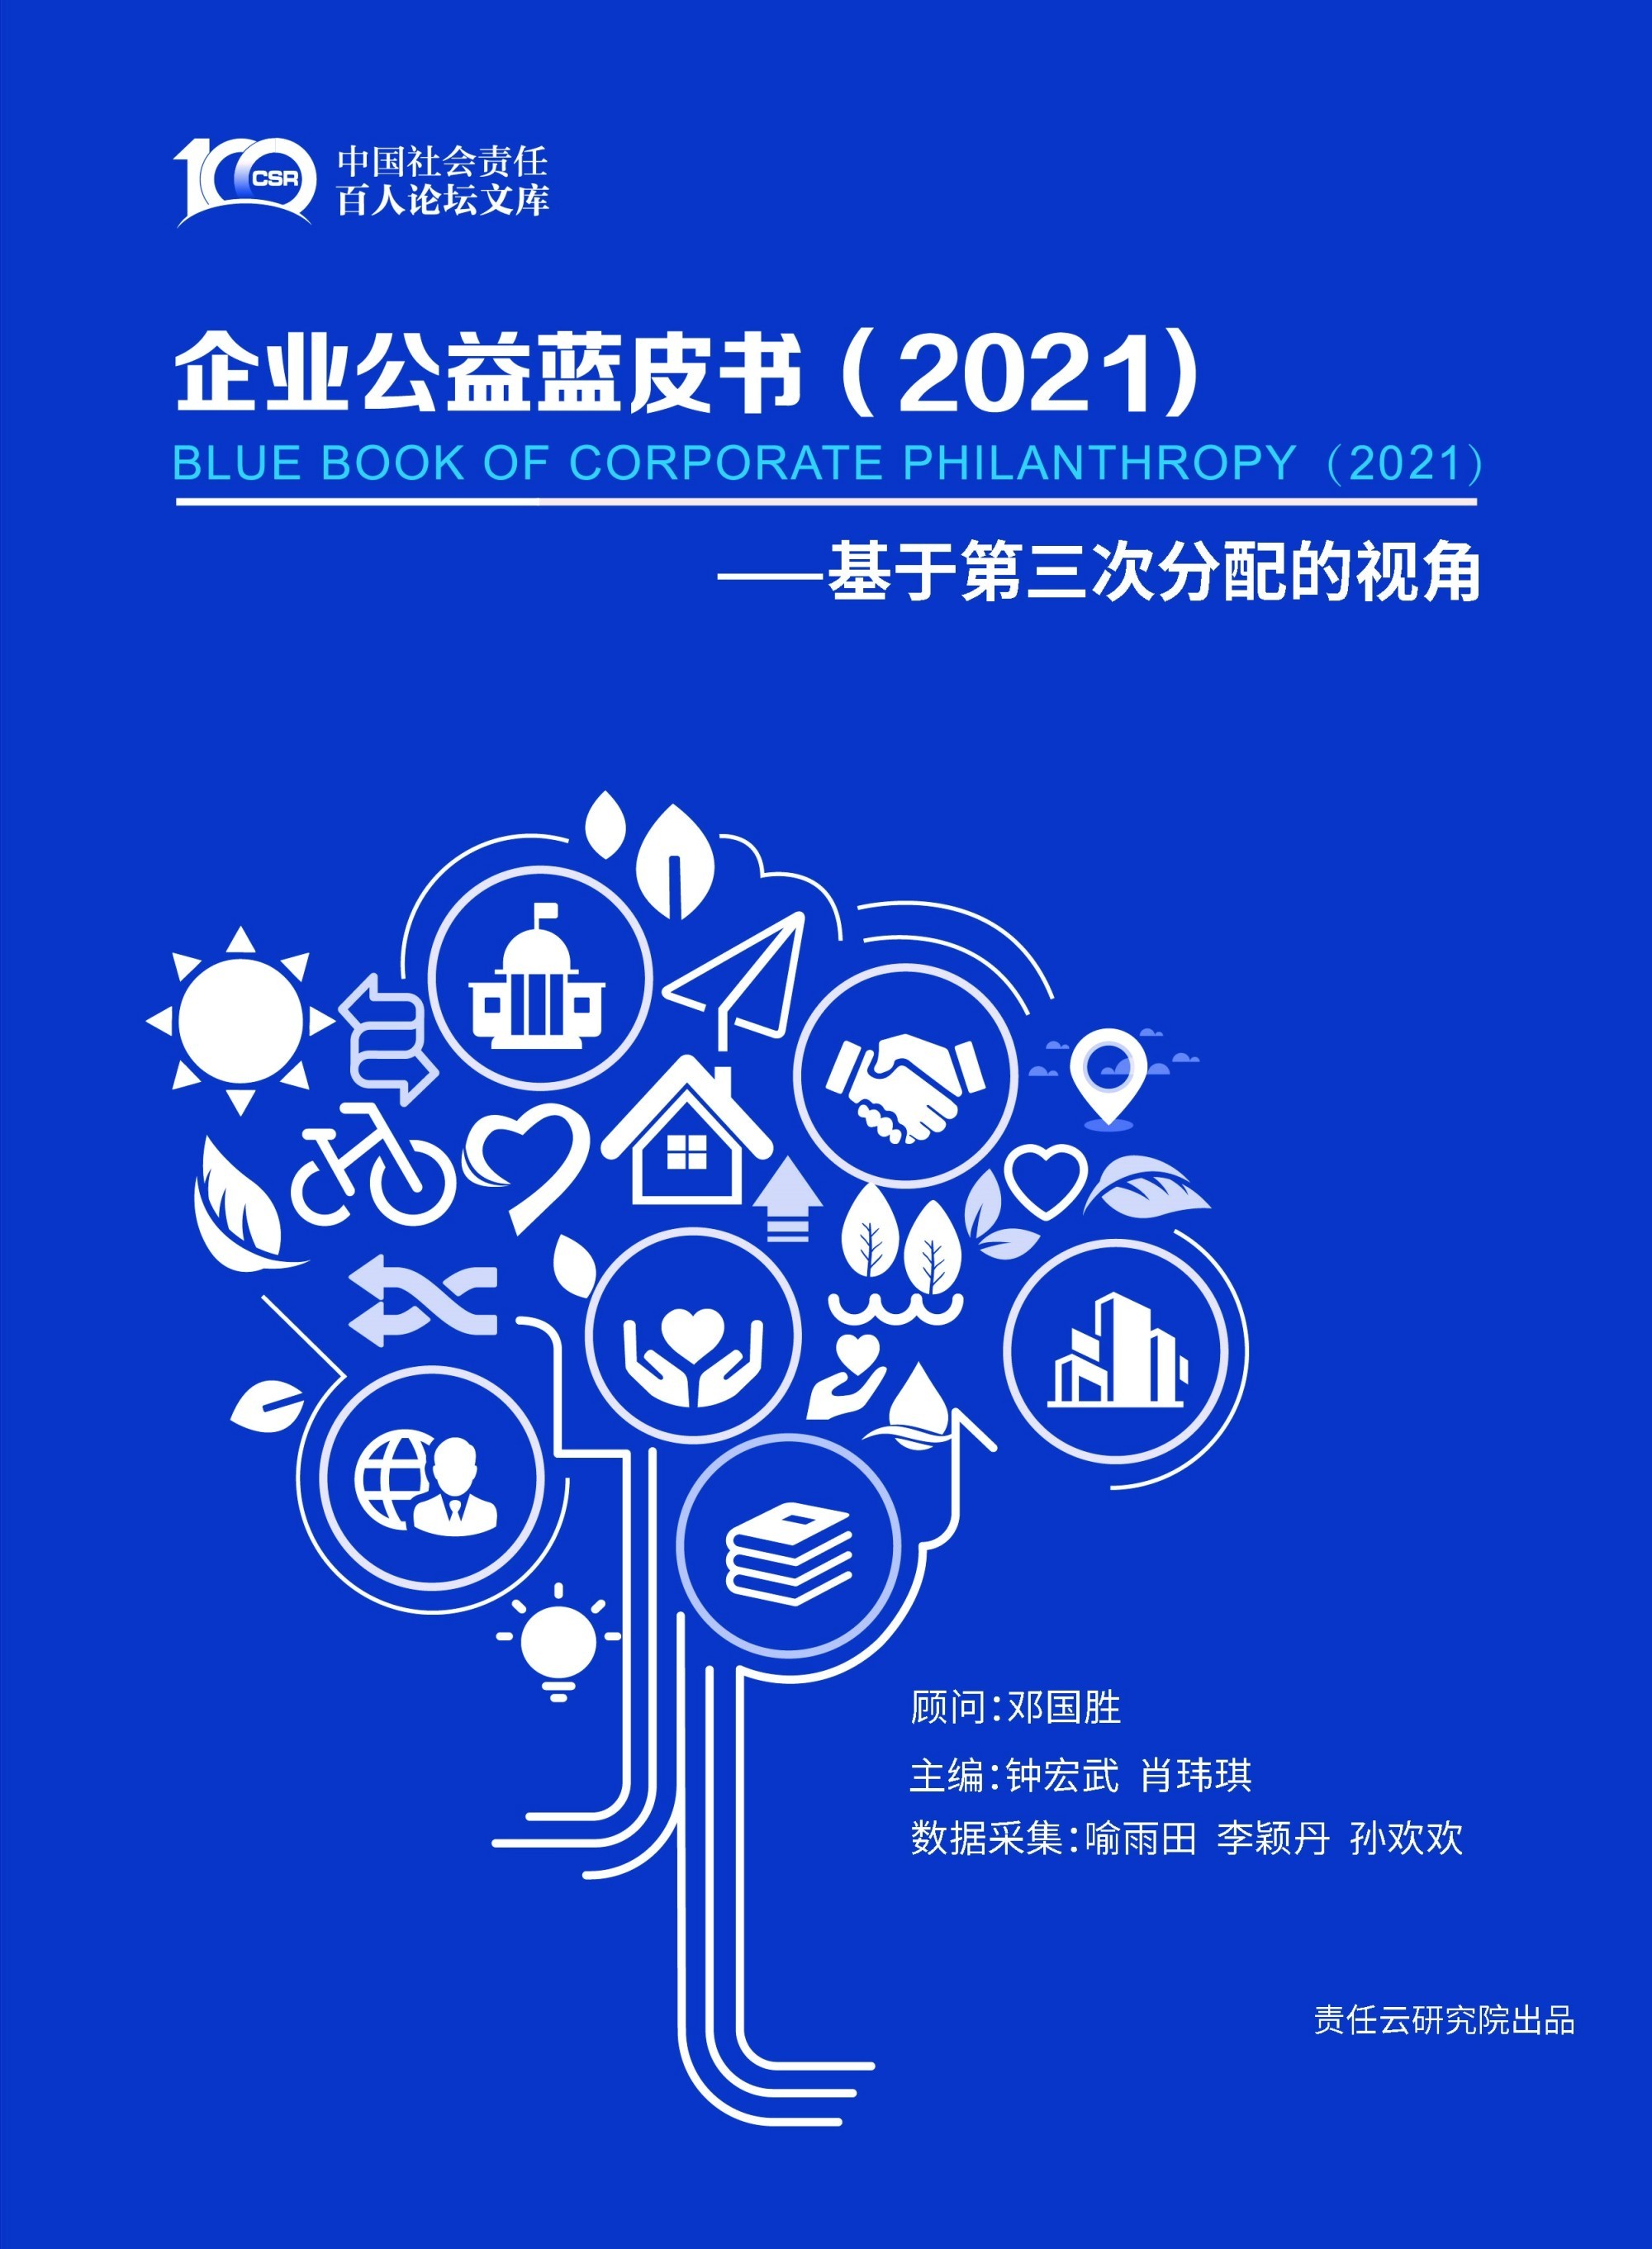 报告总结了2021年中国民营企业公益发展呈现出几个阶段性特征